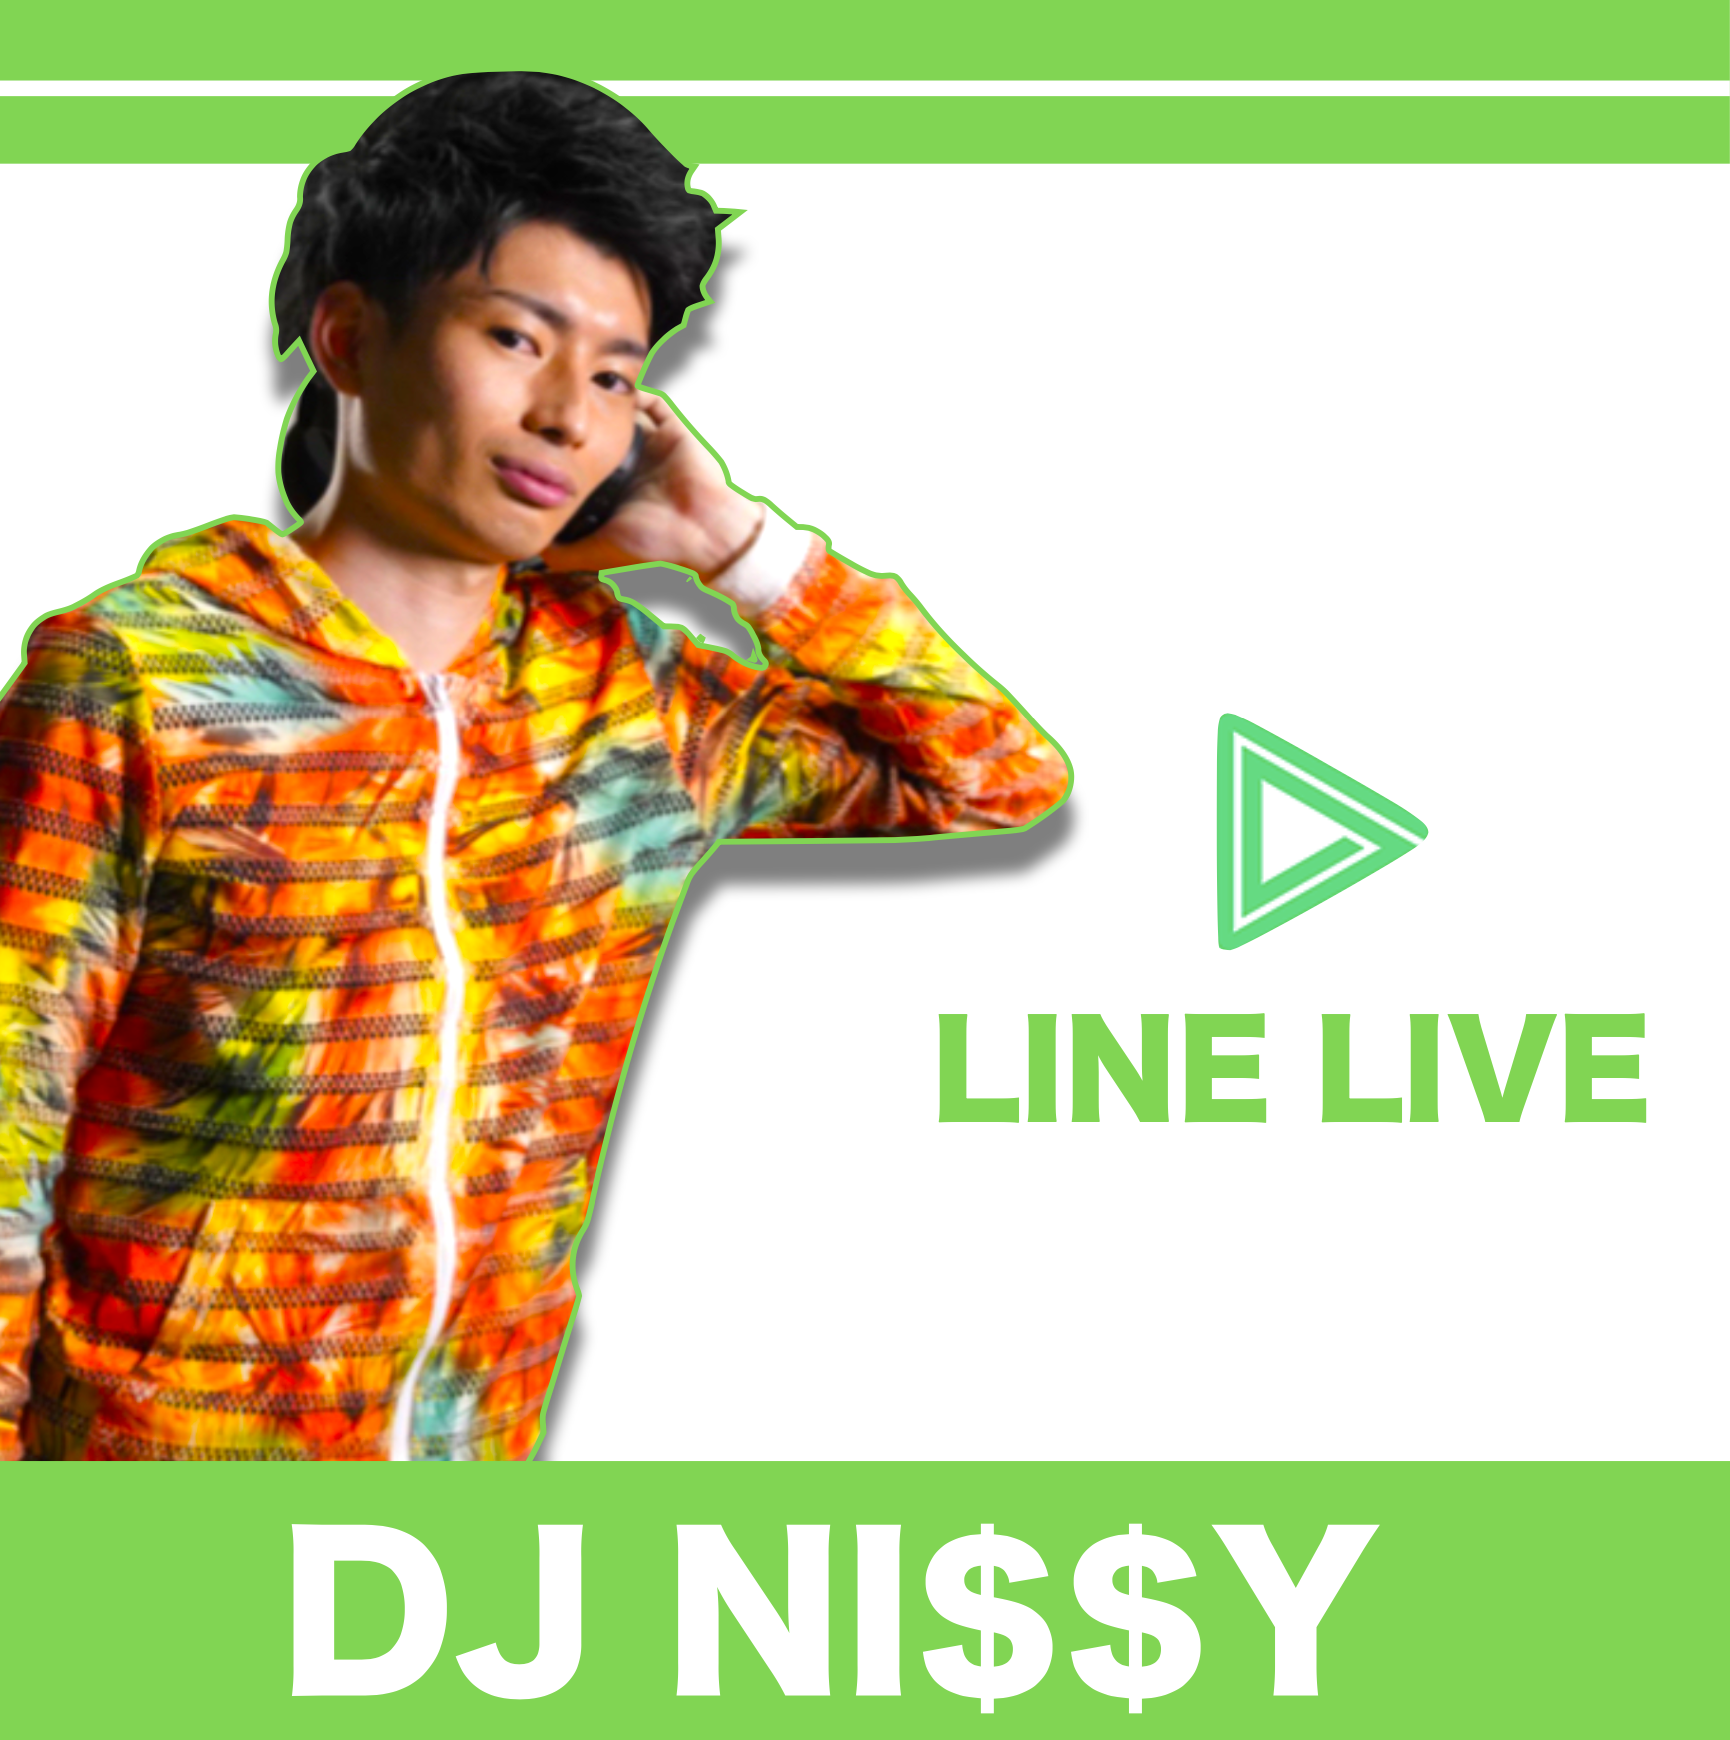 DJ NI$$Y